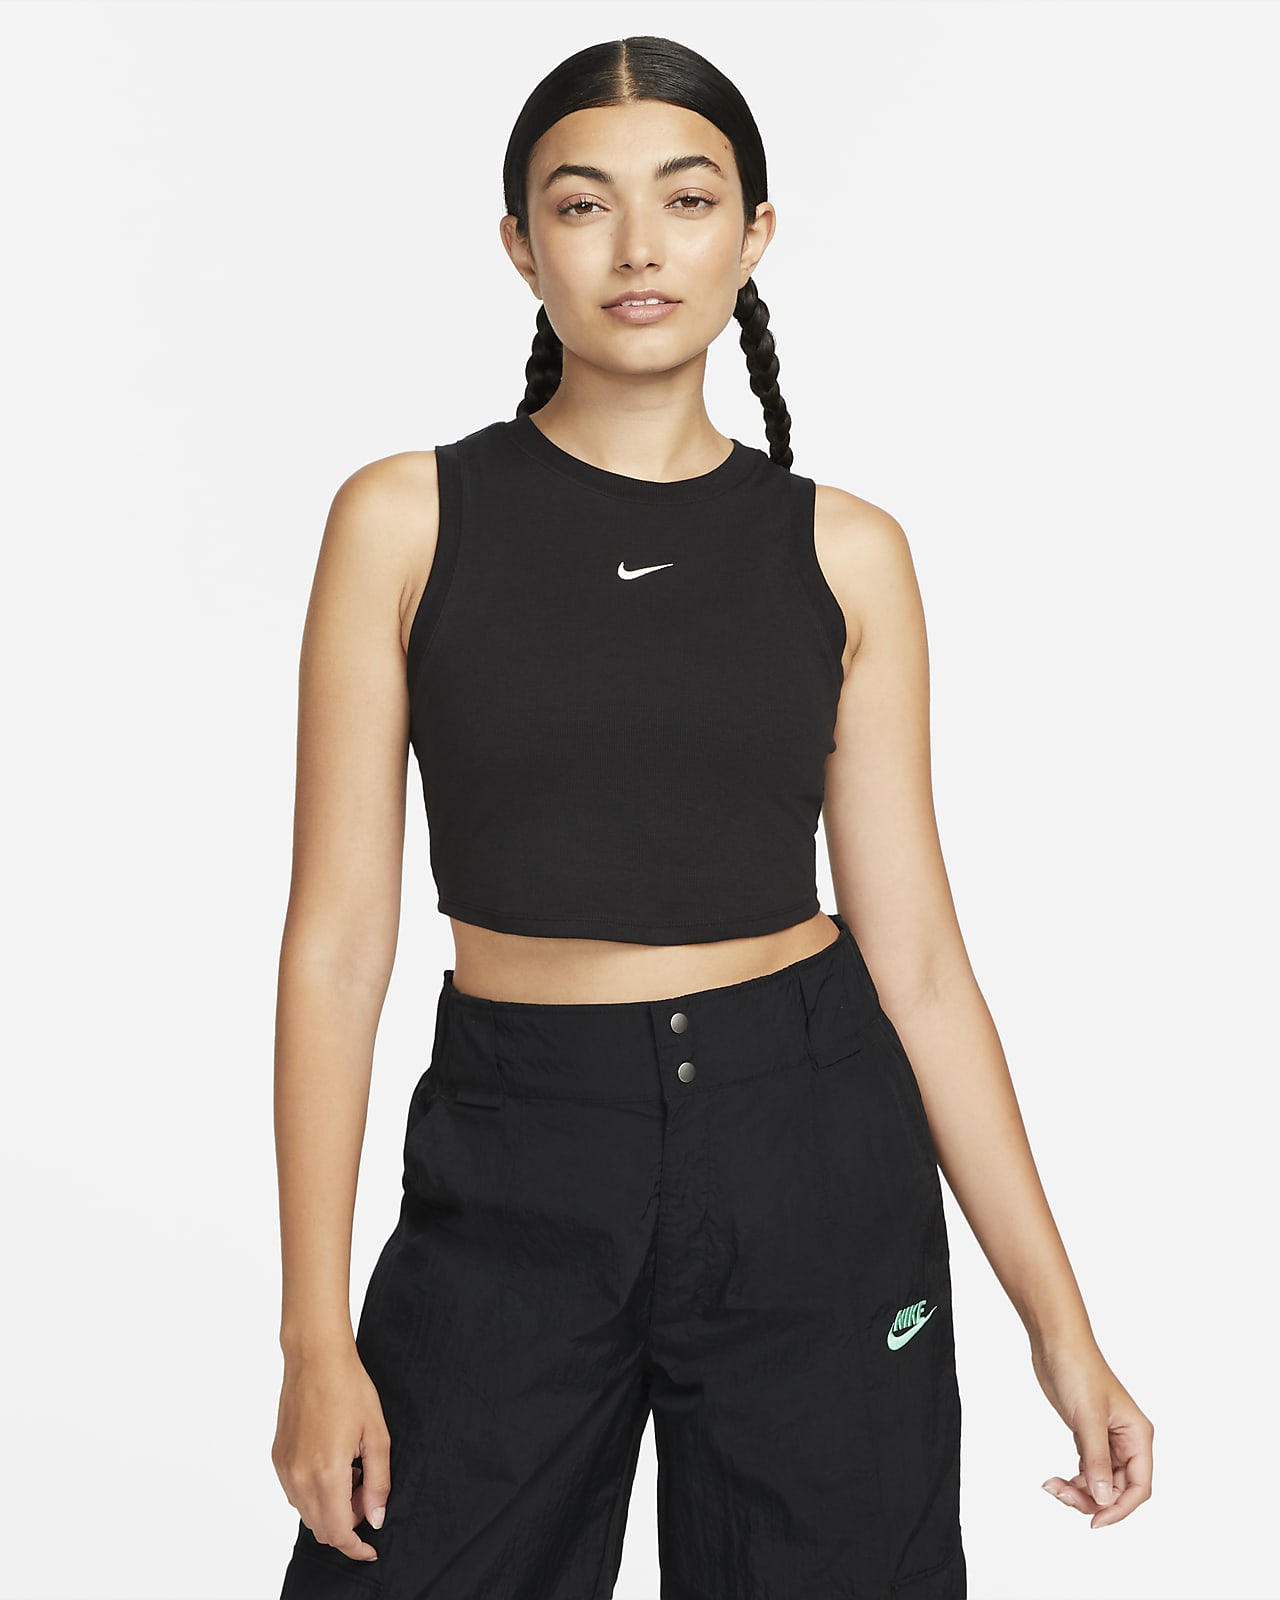 Γυναικείο tank top crop σε εφαρμοστή γραμμή με λεπτή ριμπ ύφανση Nike Sportswear Chill Knit